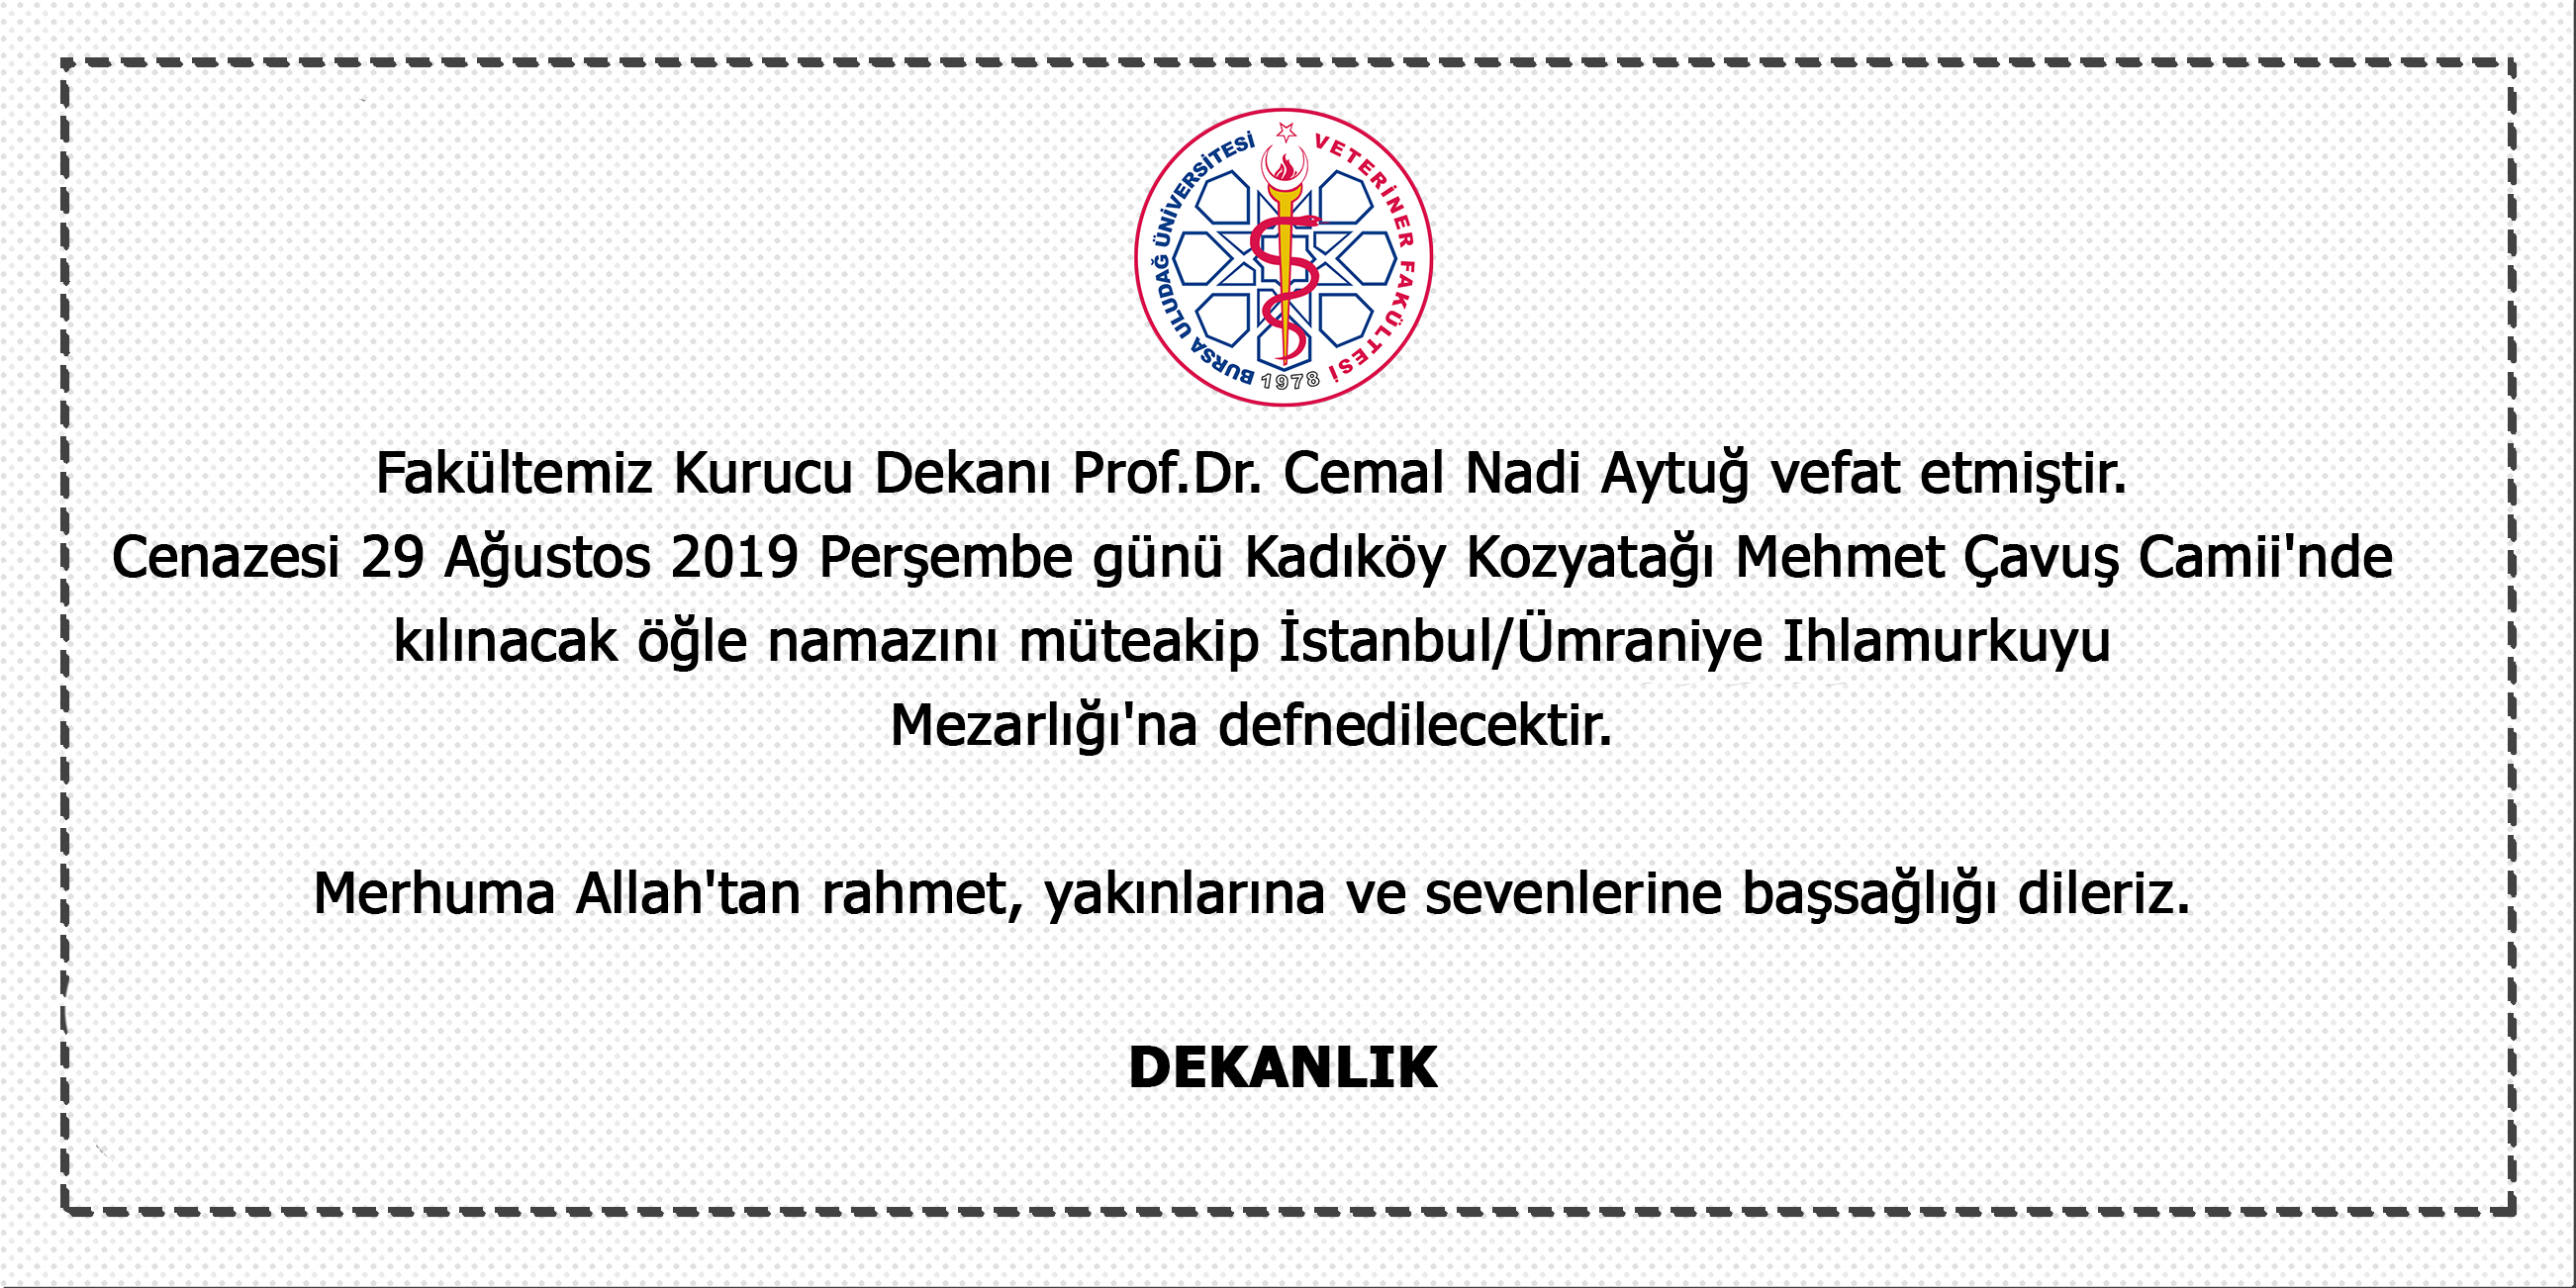  Fakültemiz Kurucu Dekanı Prof.Dr. Cemal Nadi Aytuğ vefat etmiştir. 